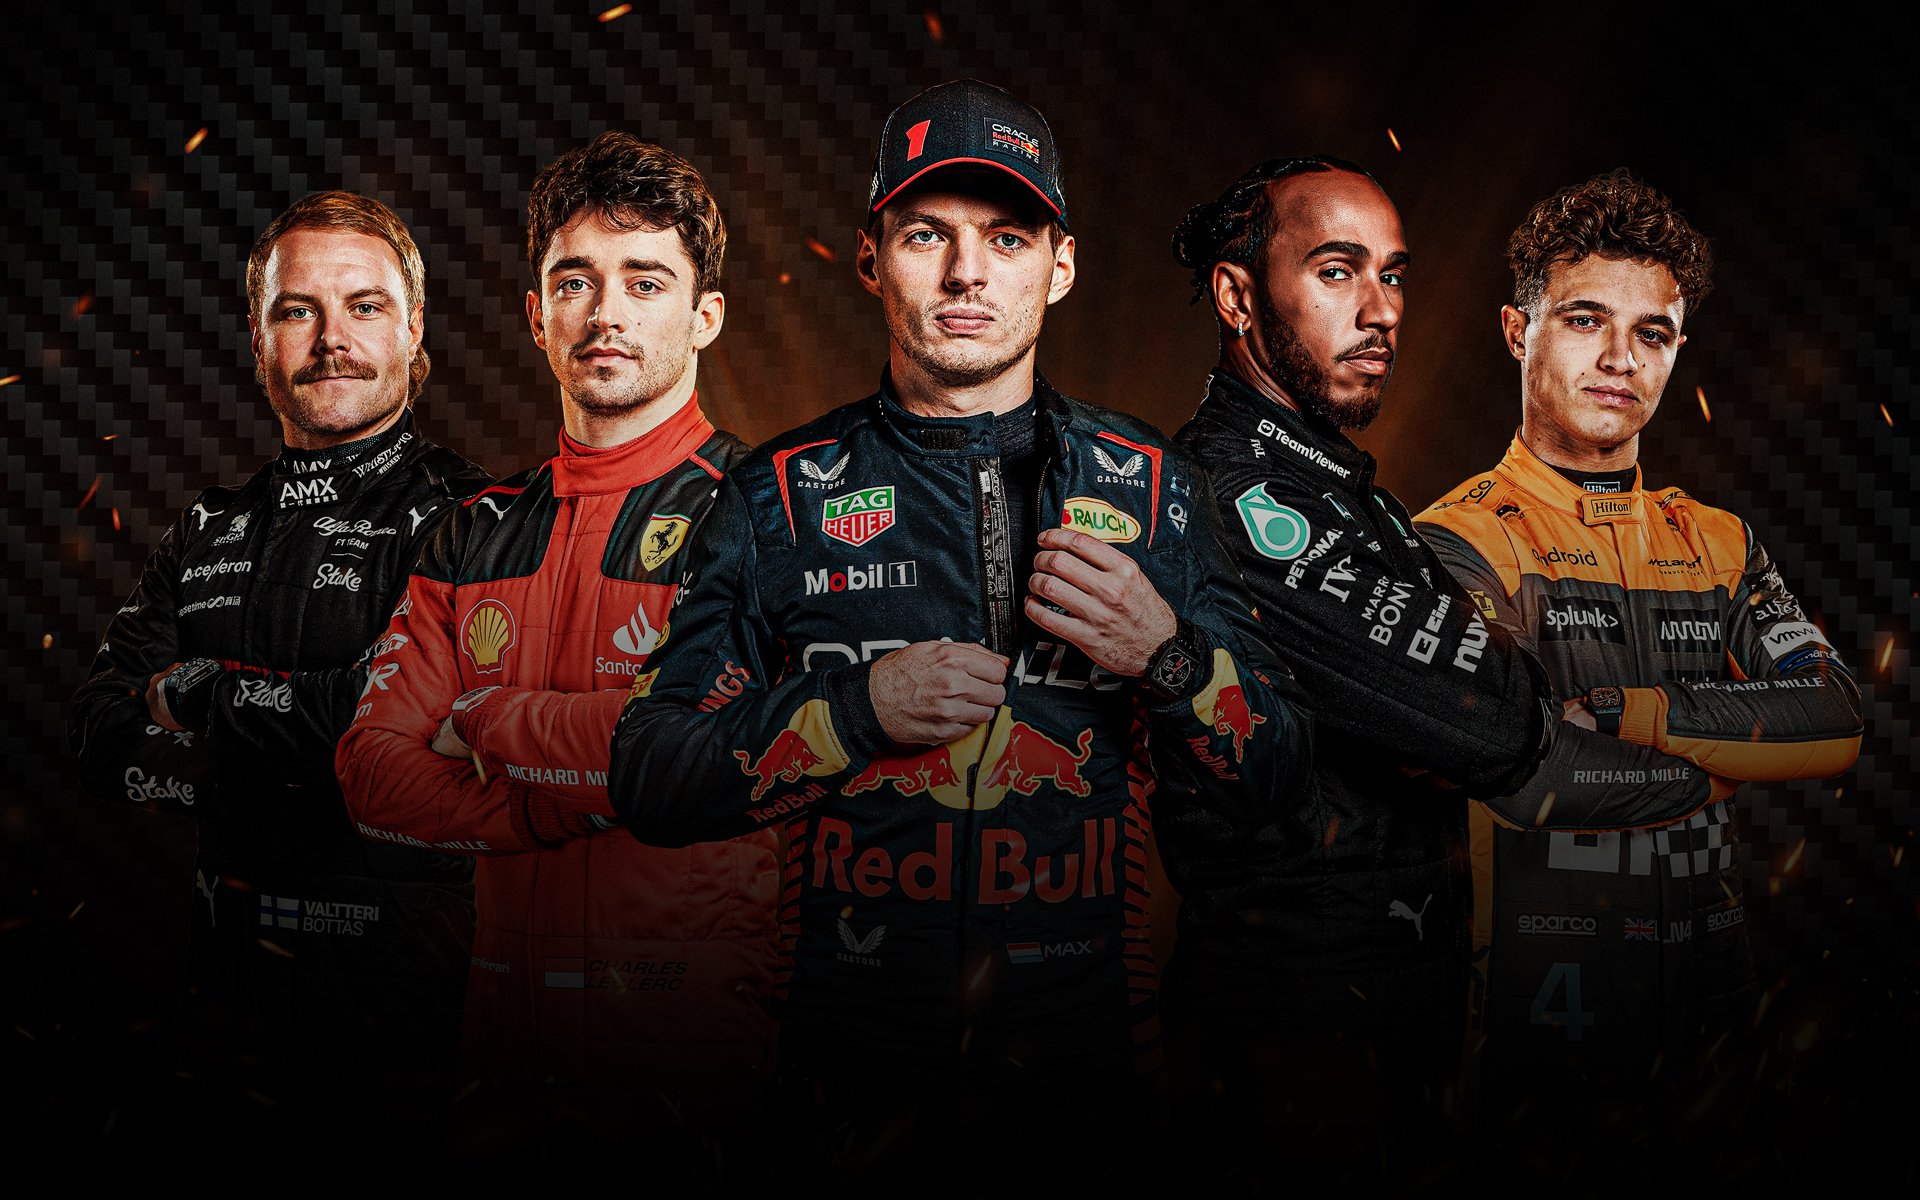 F1 / Motorsport — Sky Sport Now